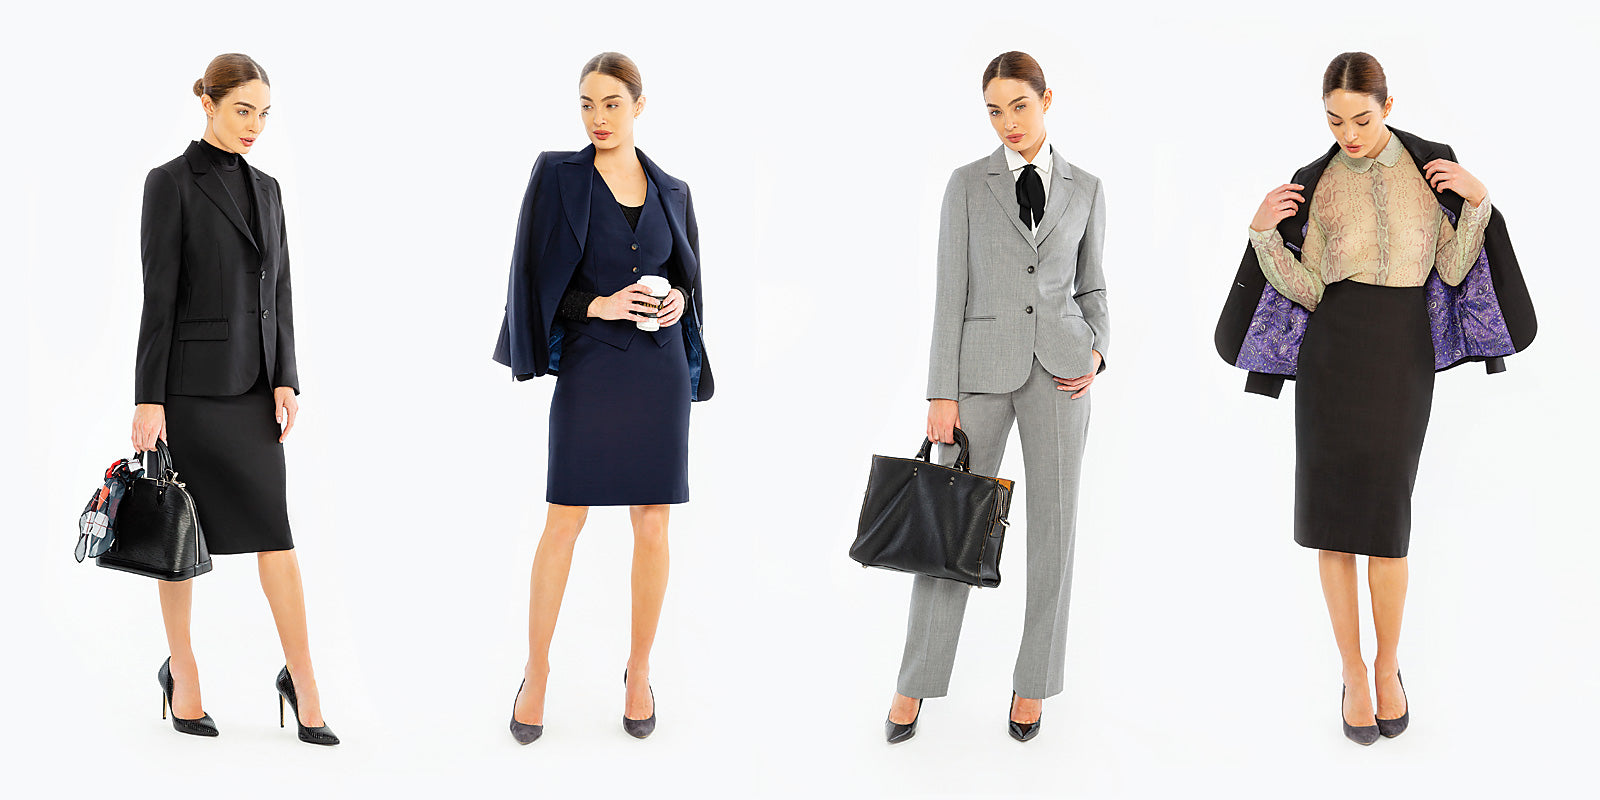 Women's Suits - Professional Women's Business Attire